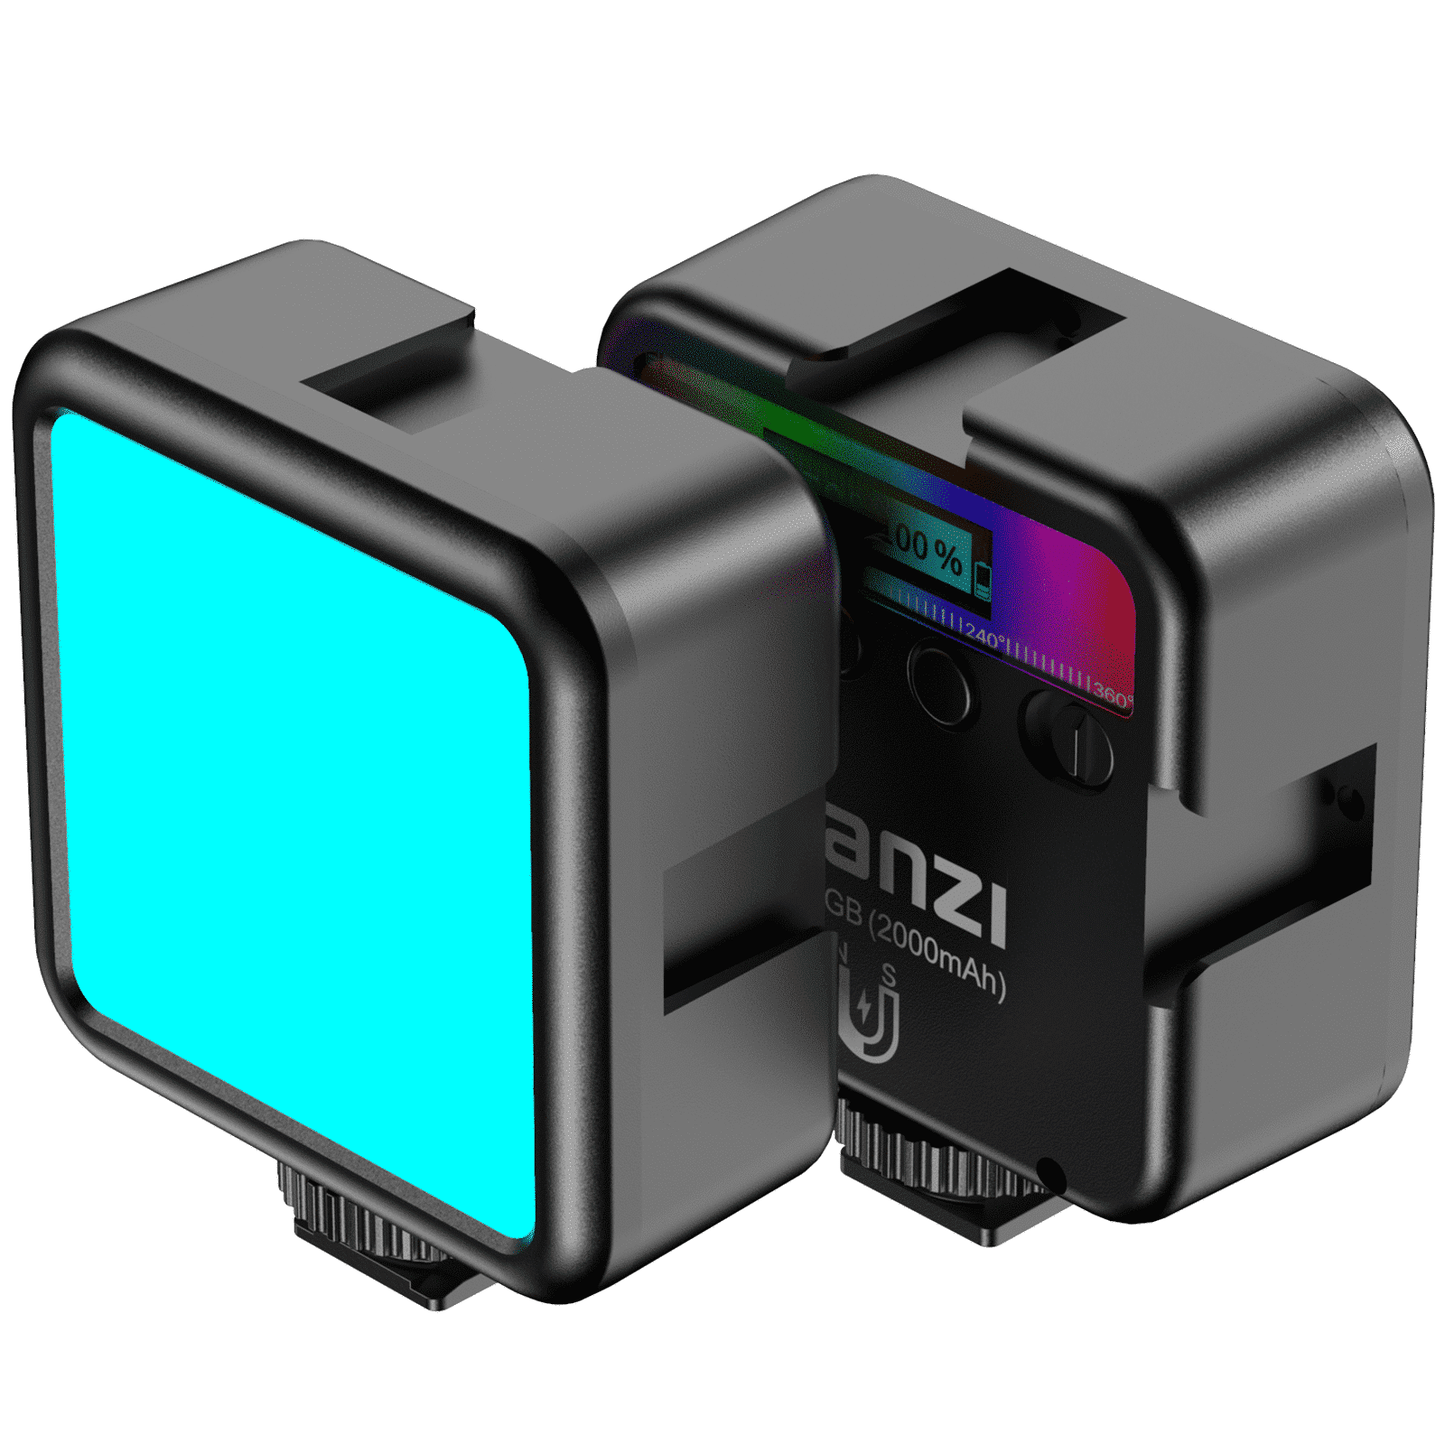 Ulanzi VL49 RGB Multi Color LED videolamp